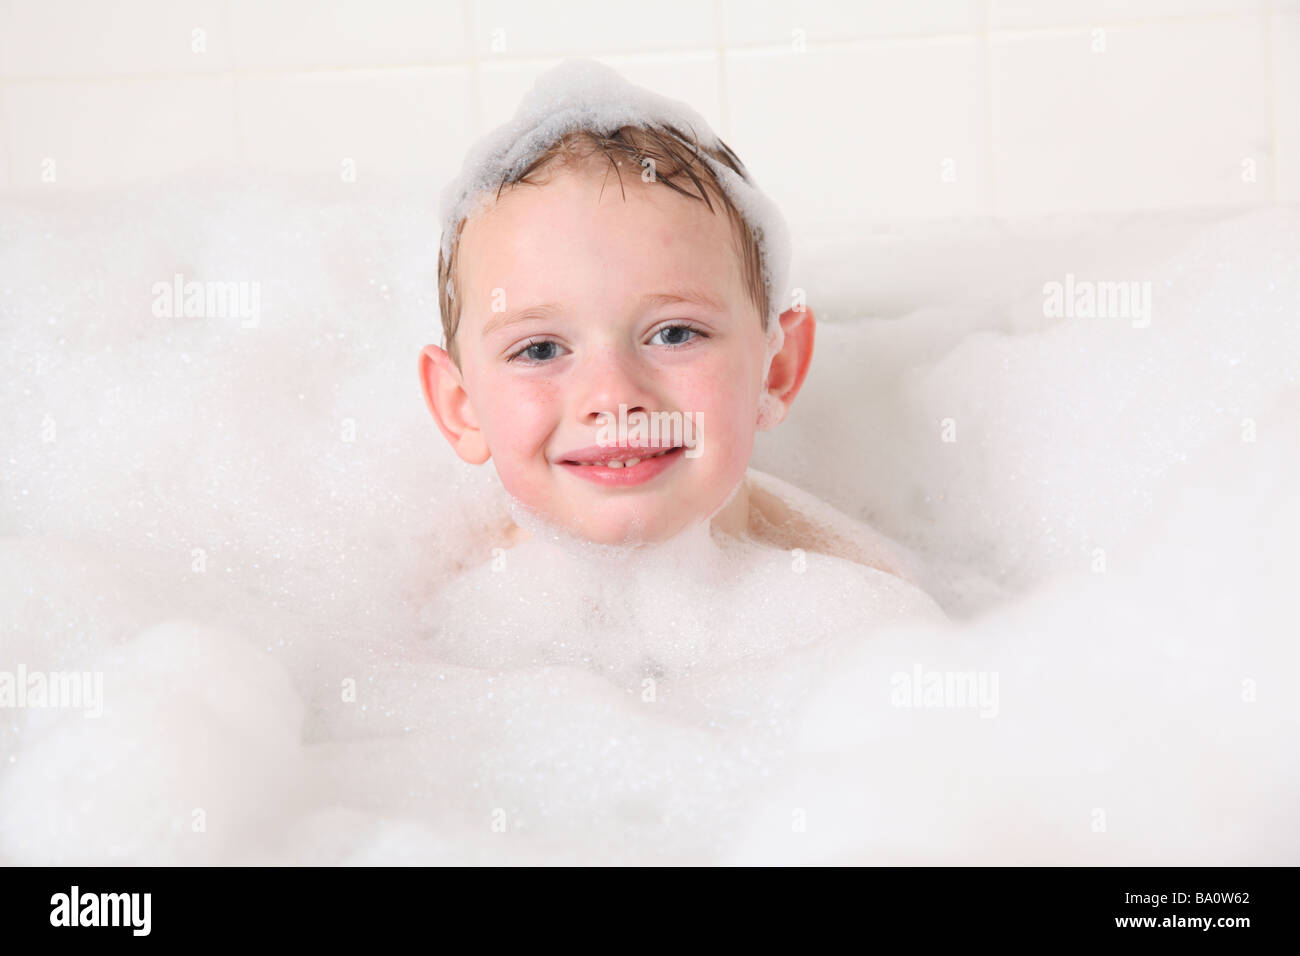 Retrato de niño en el baño de burbujas Foto de stock